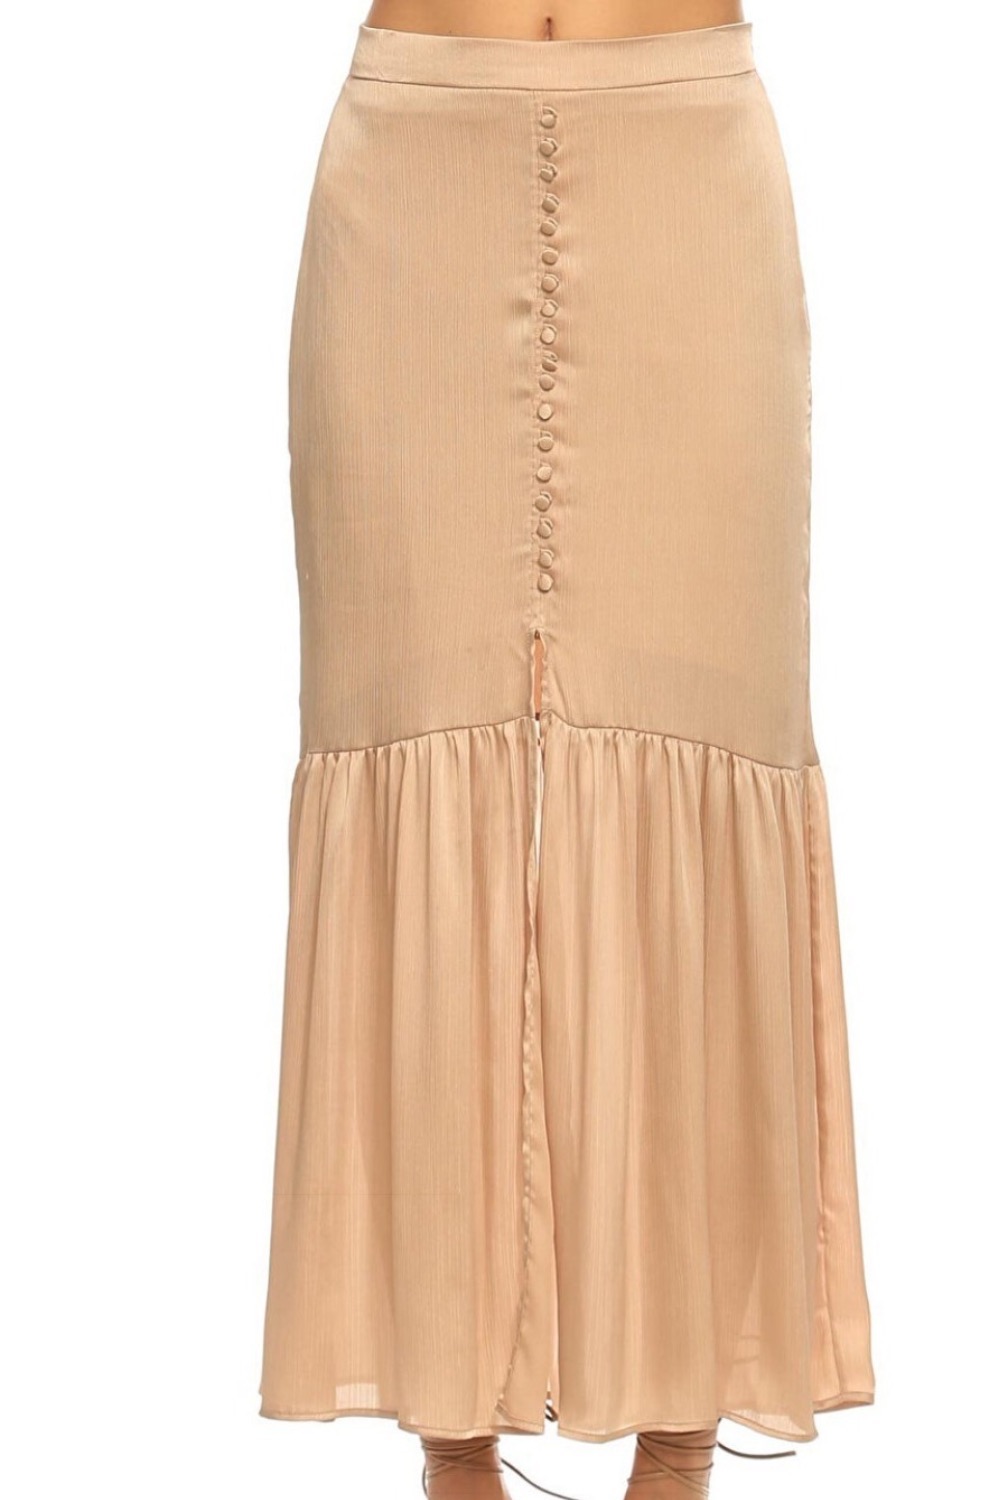 Hermosa Skirt, Slit Long Design Satin Skirt